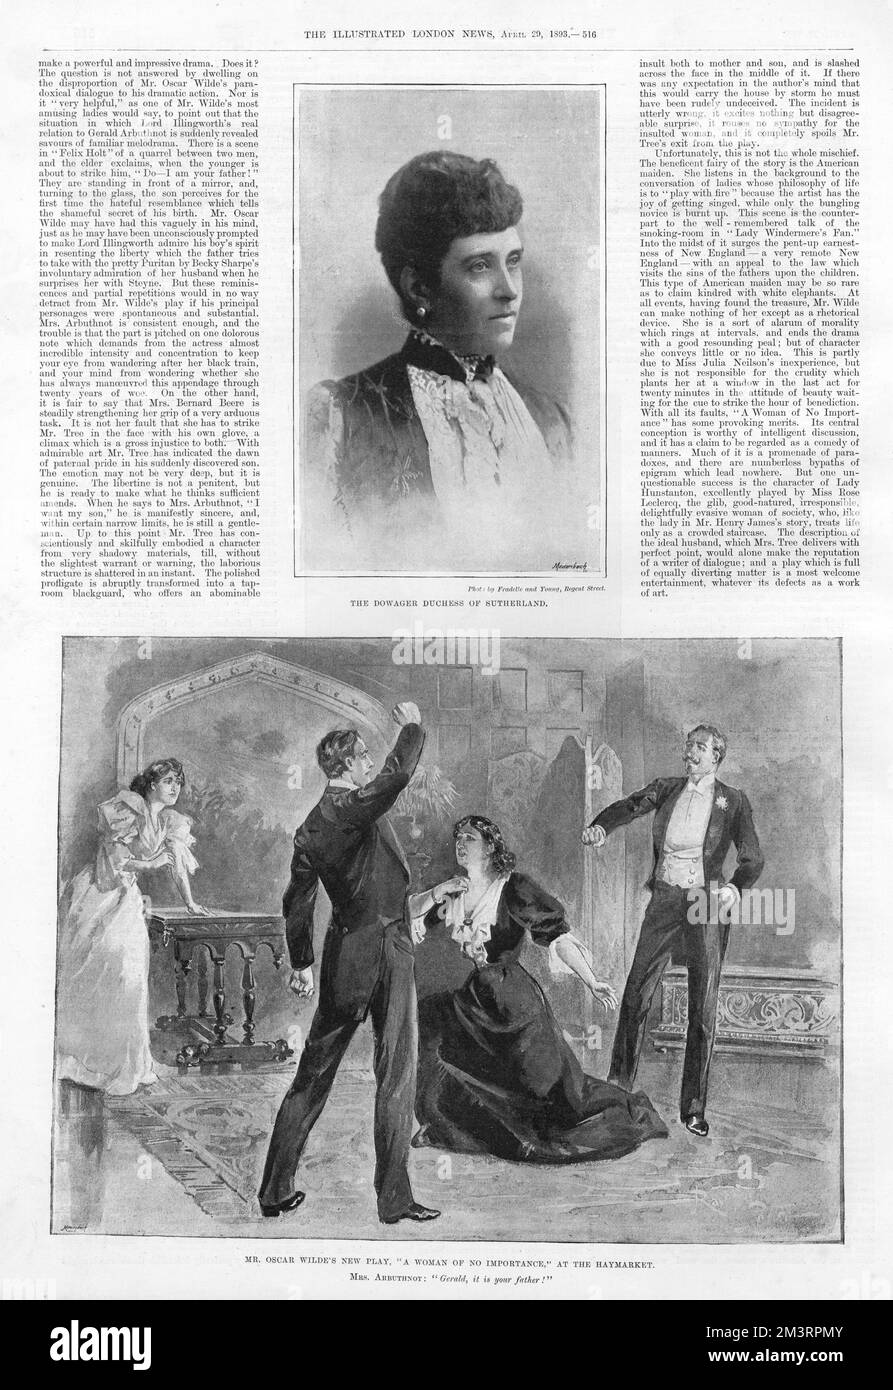 Page 516 de The Illustrated London News, 29th avril 1893, présentant la duchesse Dowager de Sutherland et une scène de la pièce d'Oscar Wilde 'A Woman of No importance' au Haymarket. Date: 1893 Banque D'Images